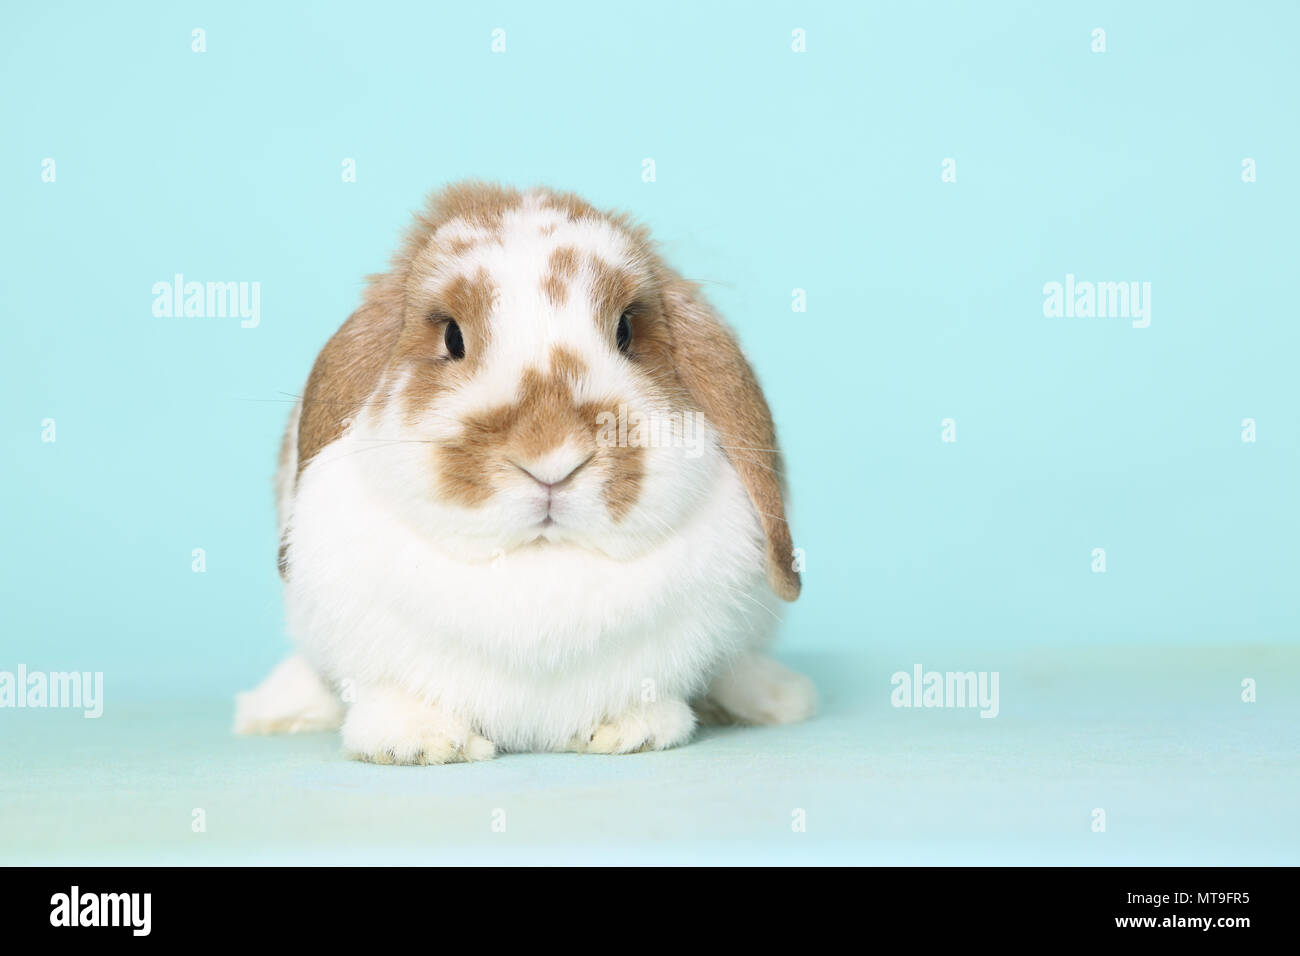 Dwarf Lop-eared Rabbit seduta, come si vede in testa-a. Studio Immagine contro un fondo azzurro Foto Stock